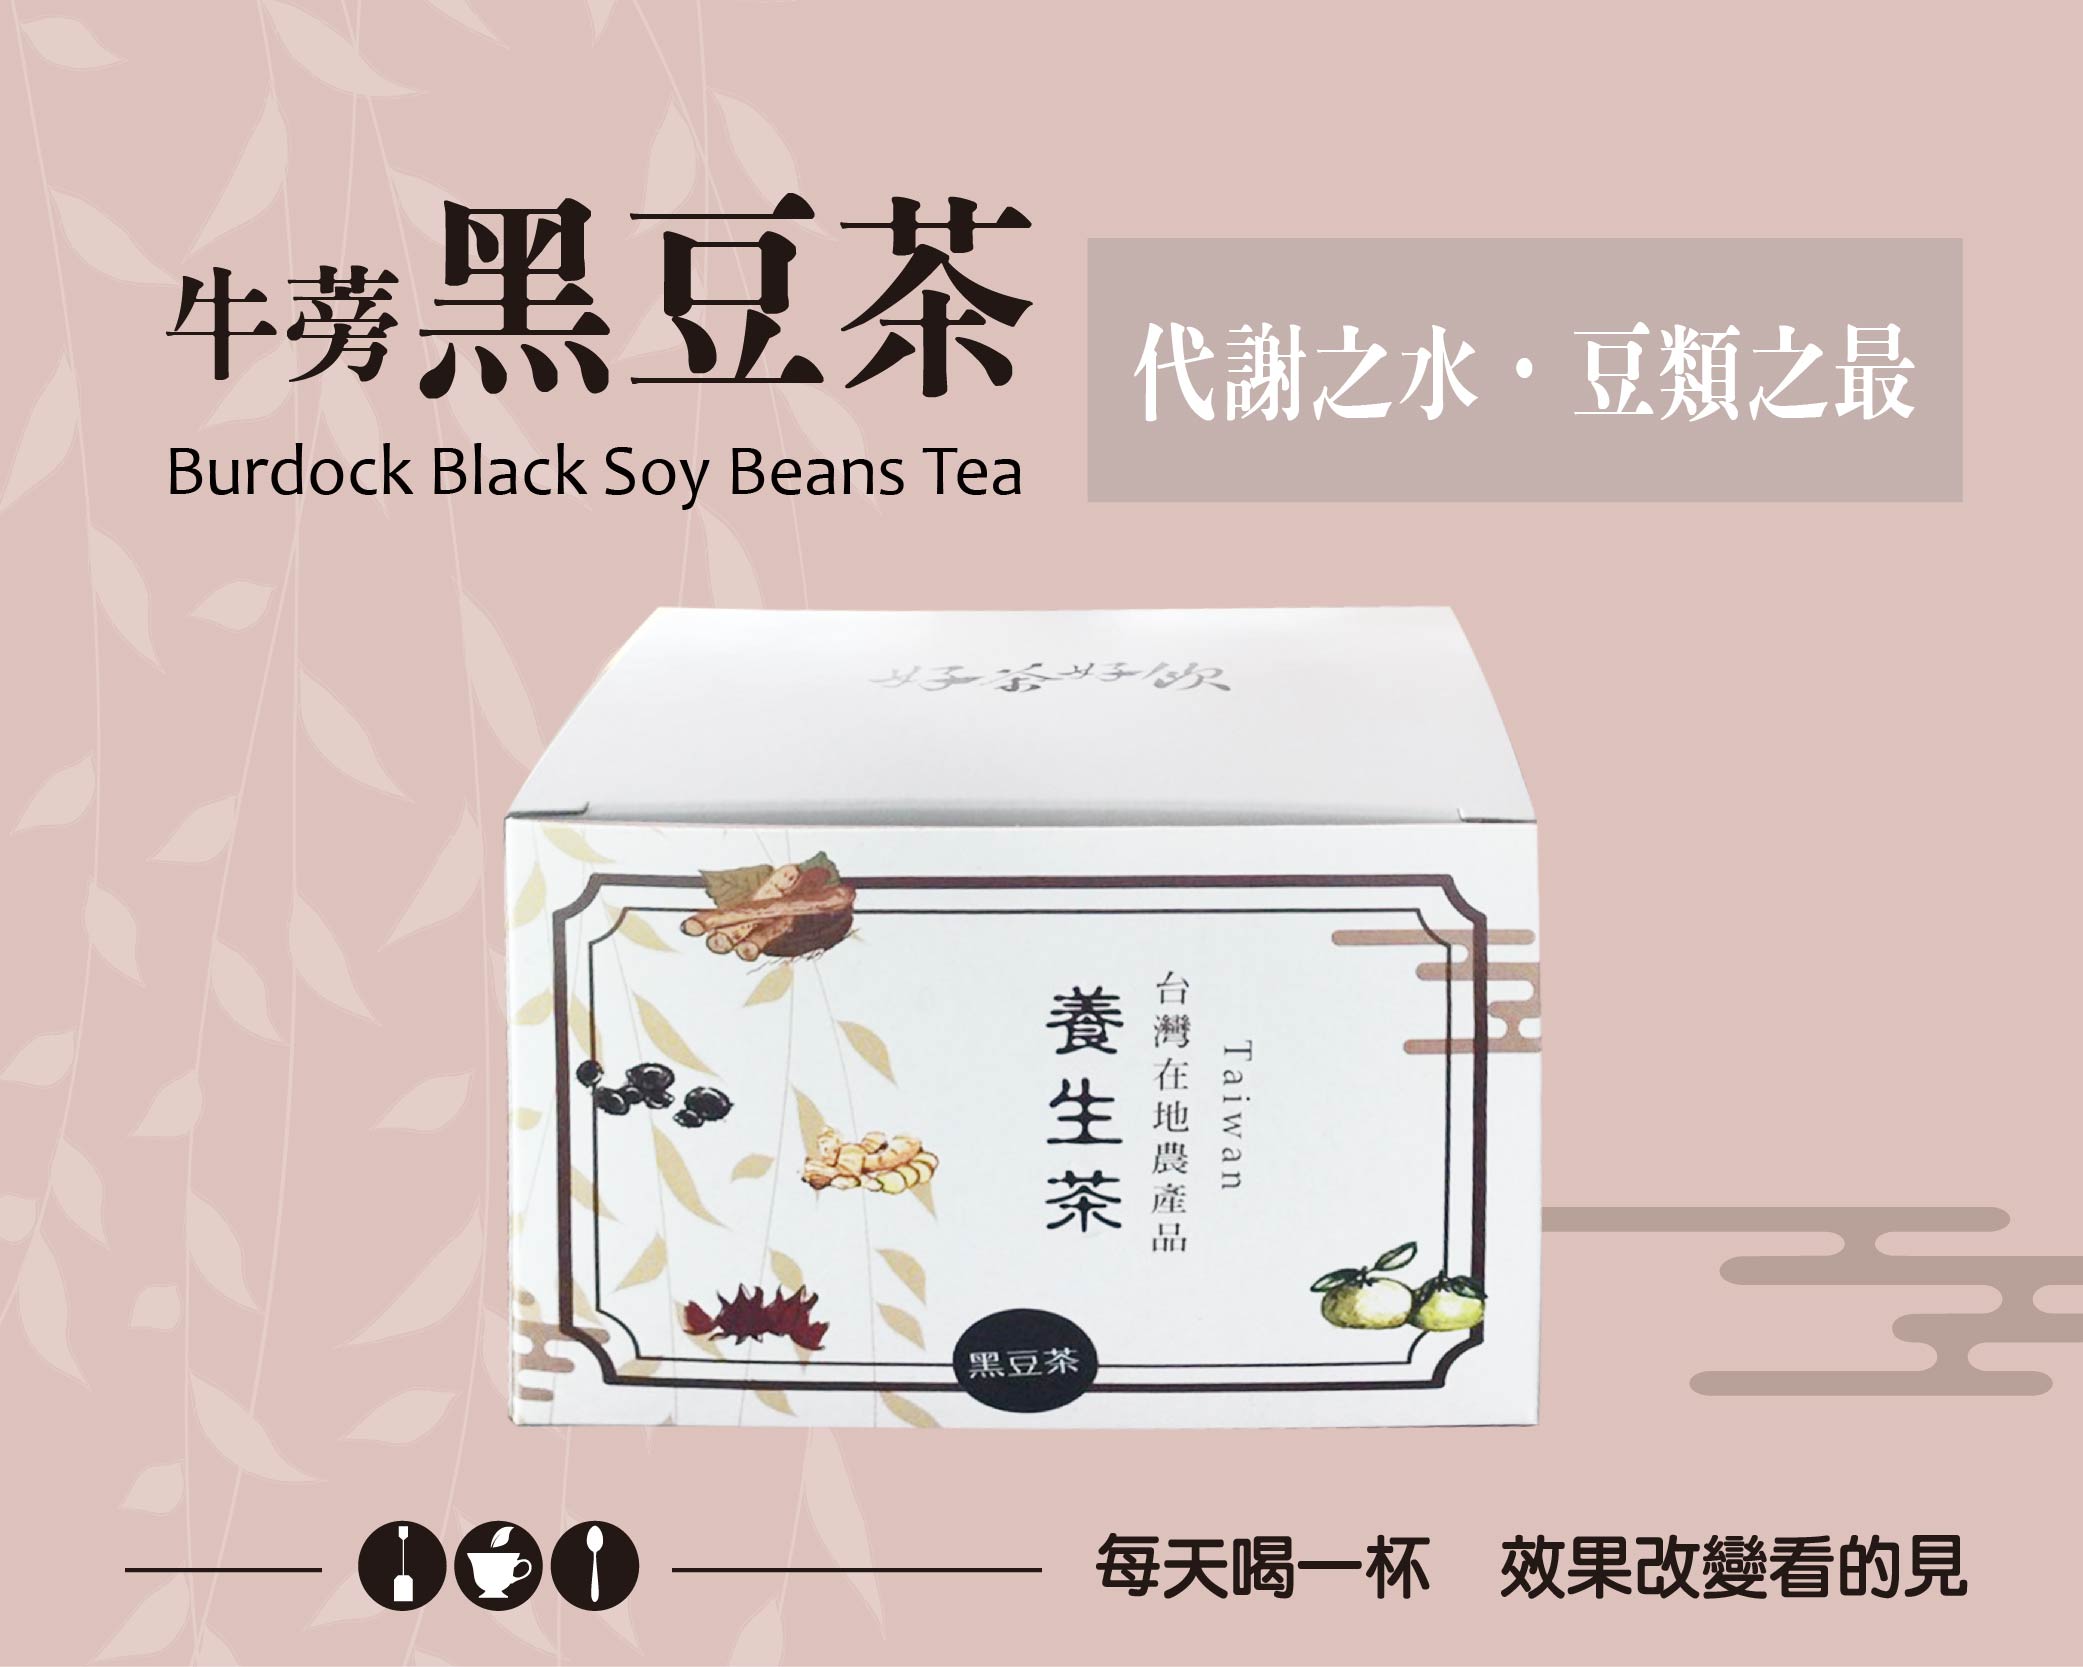 牛蒡黑豆茶15包/盒-養顏美容並使排便順暢